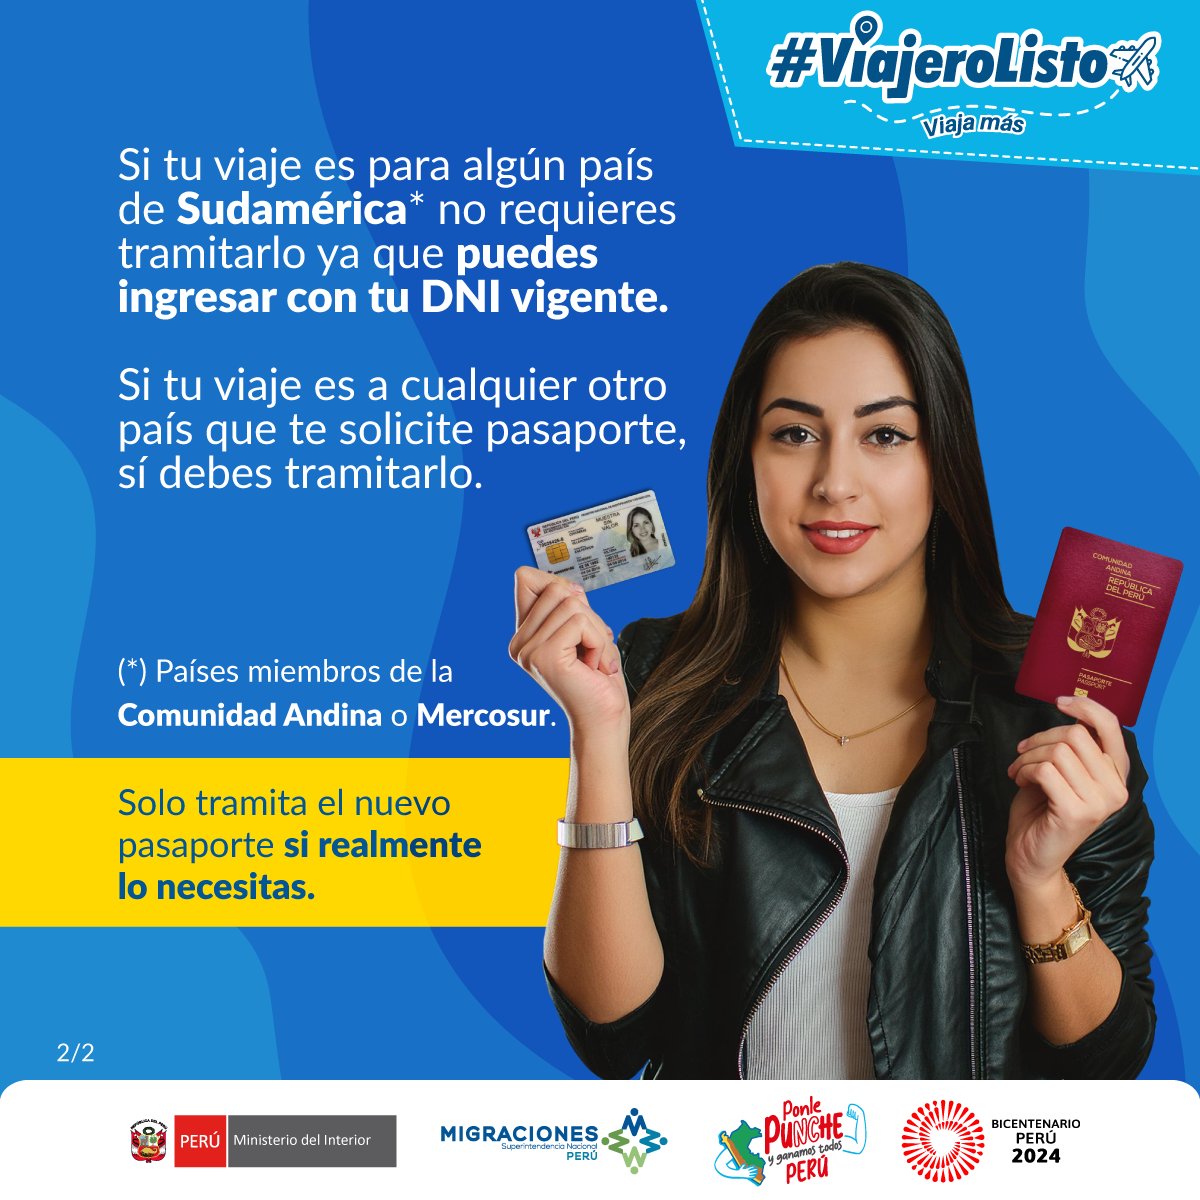 ✈️ ¡Sé un #ViajeroListo! Si viajas a algún país de Sudamérica, parte de la @ComunidadAndina o @Mercosur, #MigracionesPerú te recuerda que puedes ingresar con tu DNI vigente, no se requiere de pasaporte.